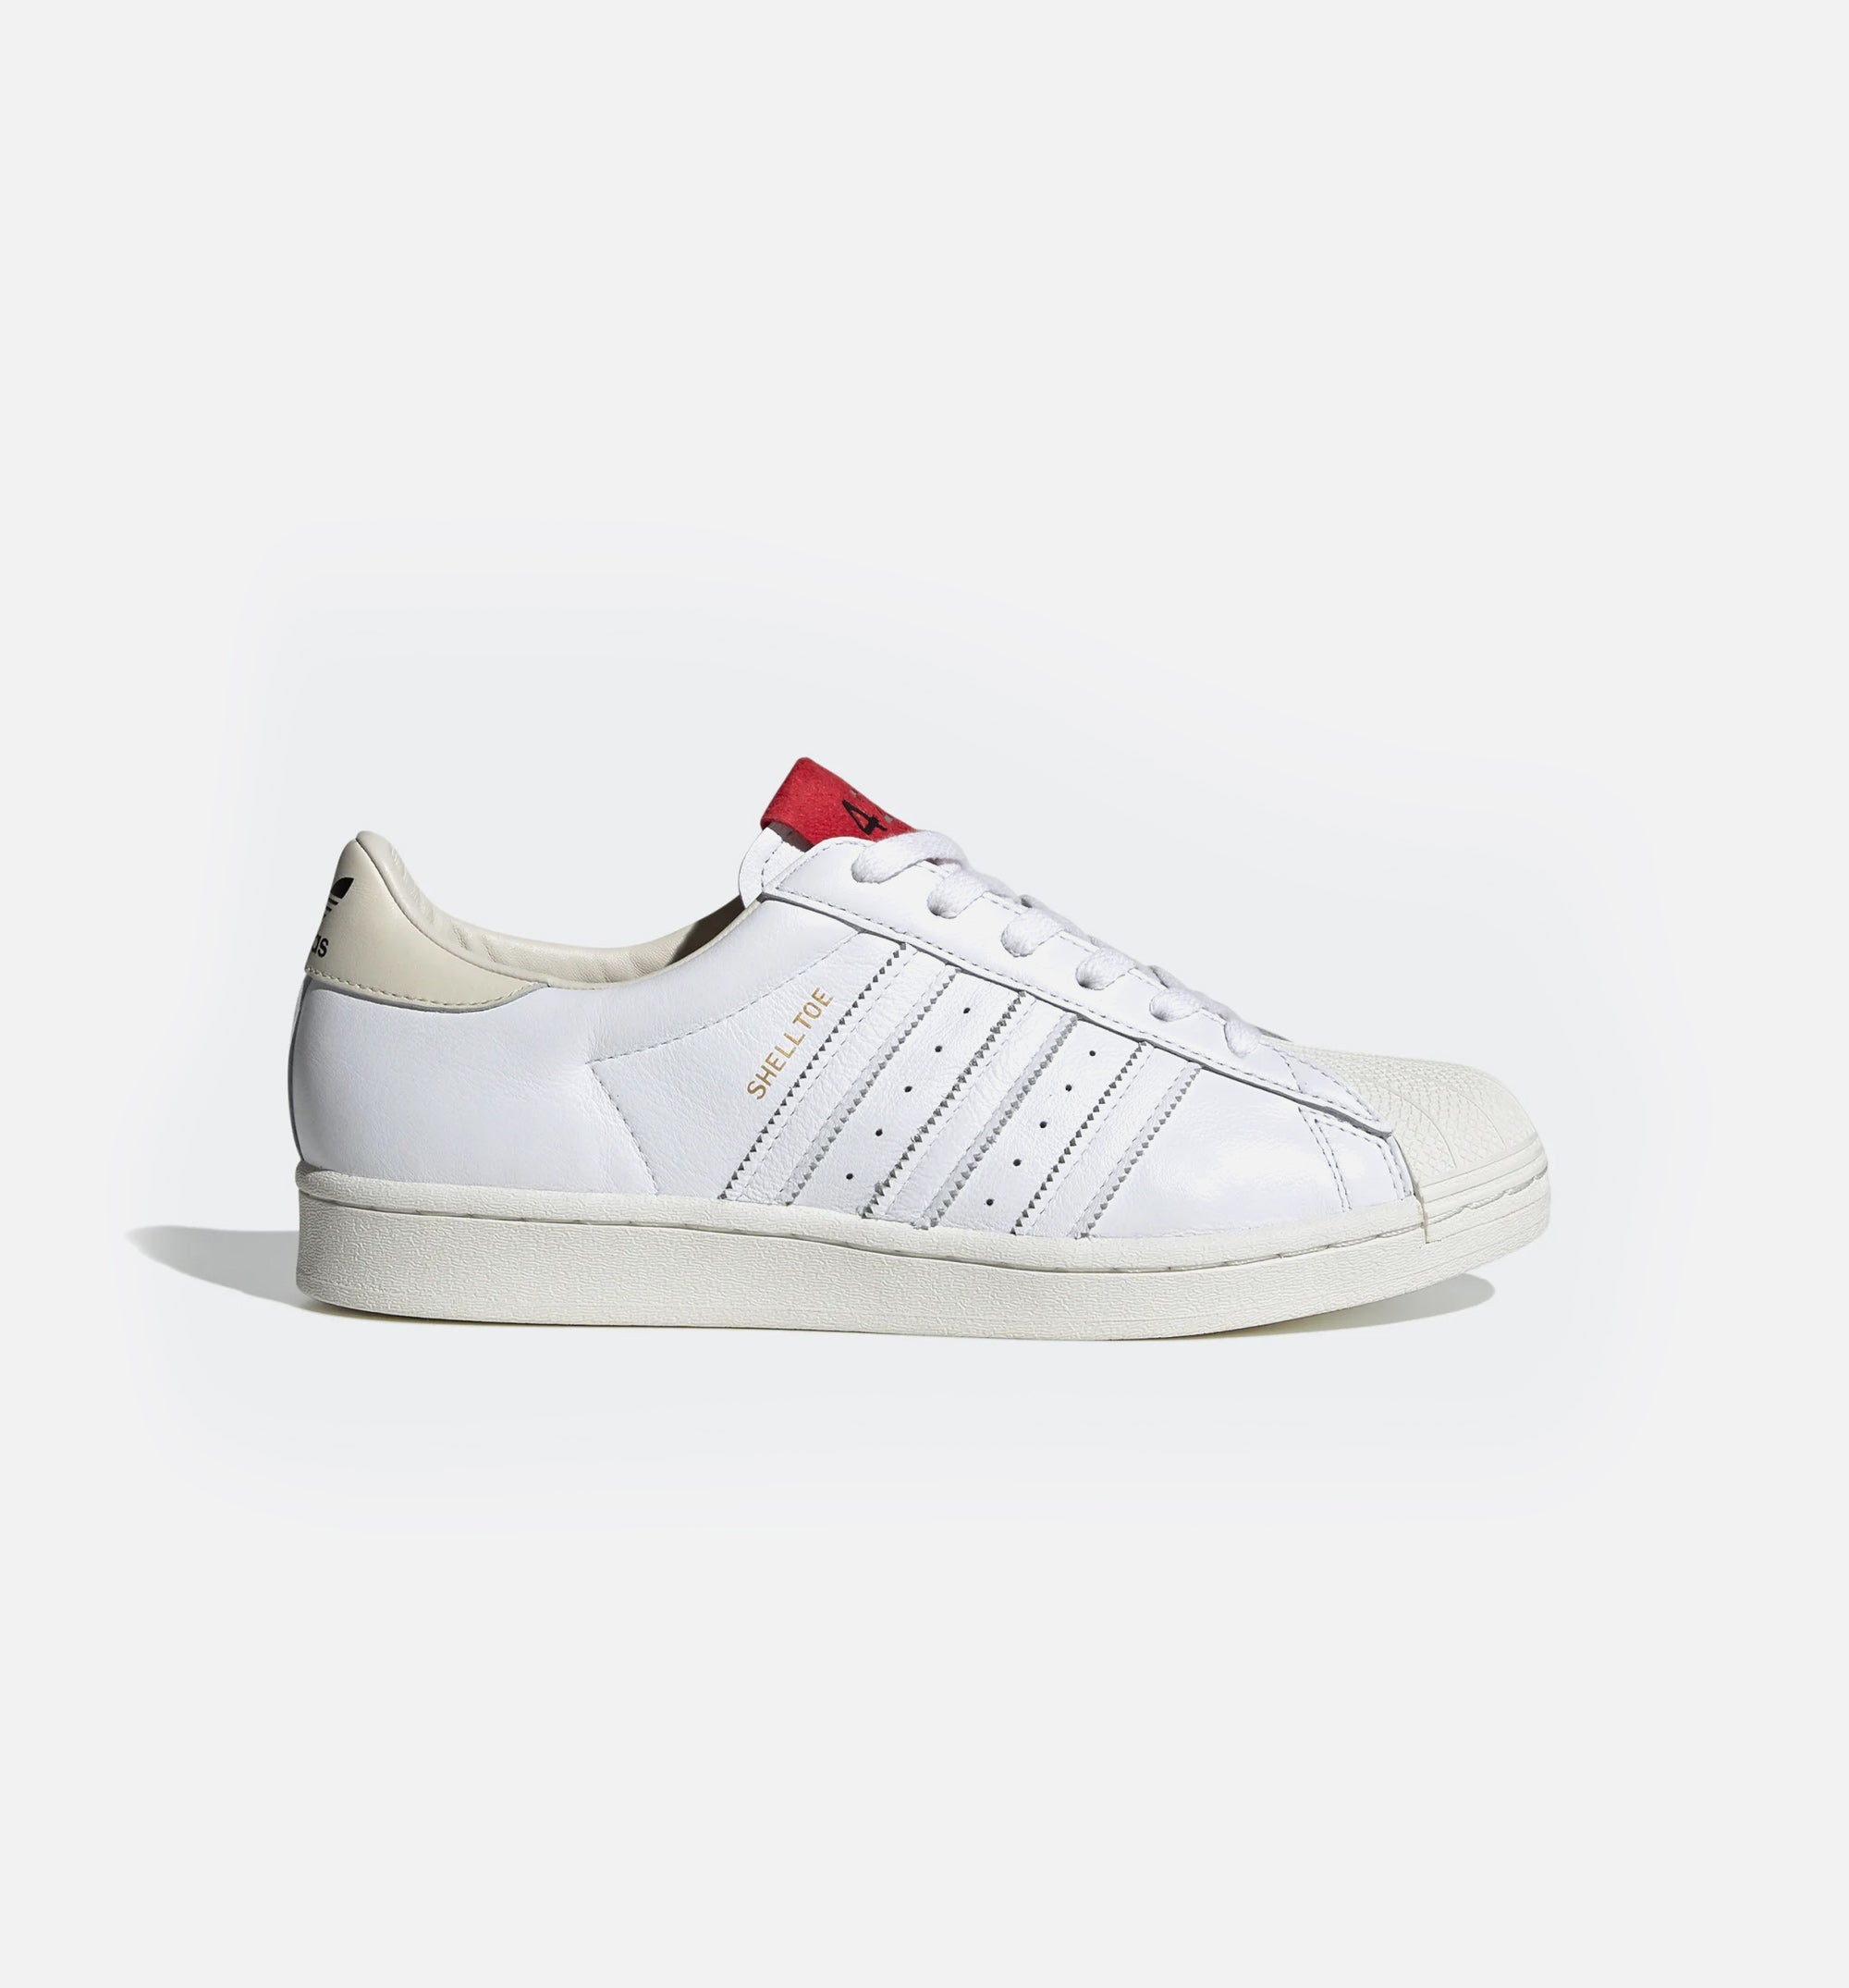 Adidas Consortium FW7624 424 Mens Lifestyle Shoe - White/Red – ShopNiceKicks.com